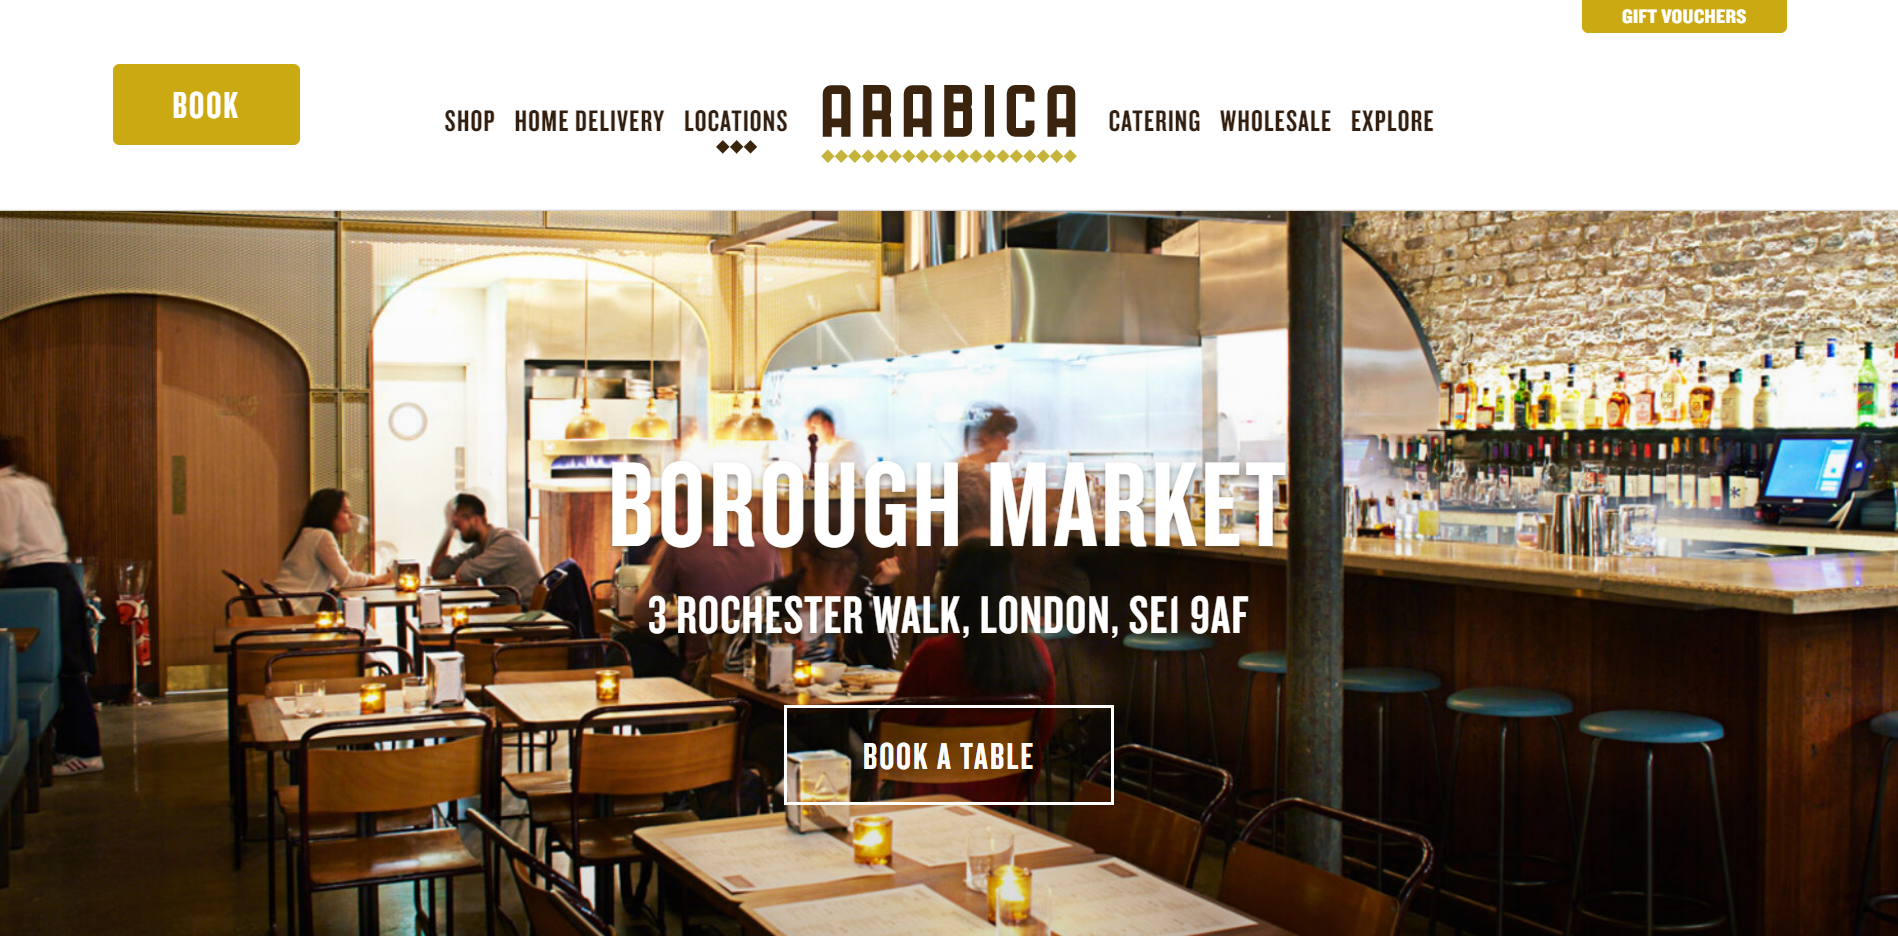 Arabica Bar and Kitchen